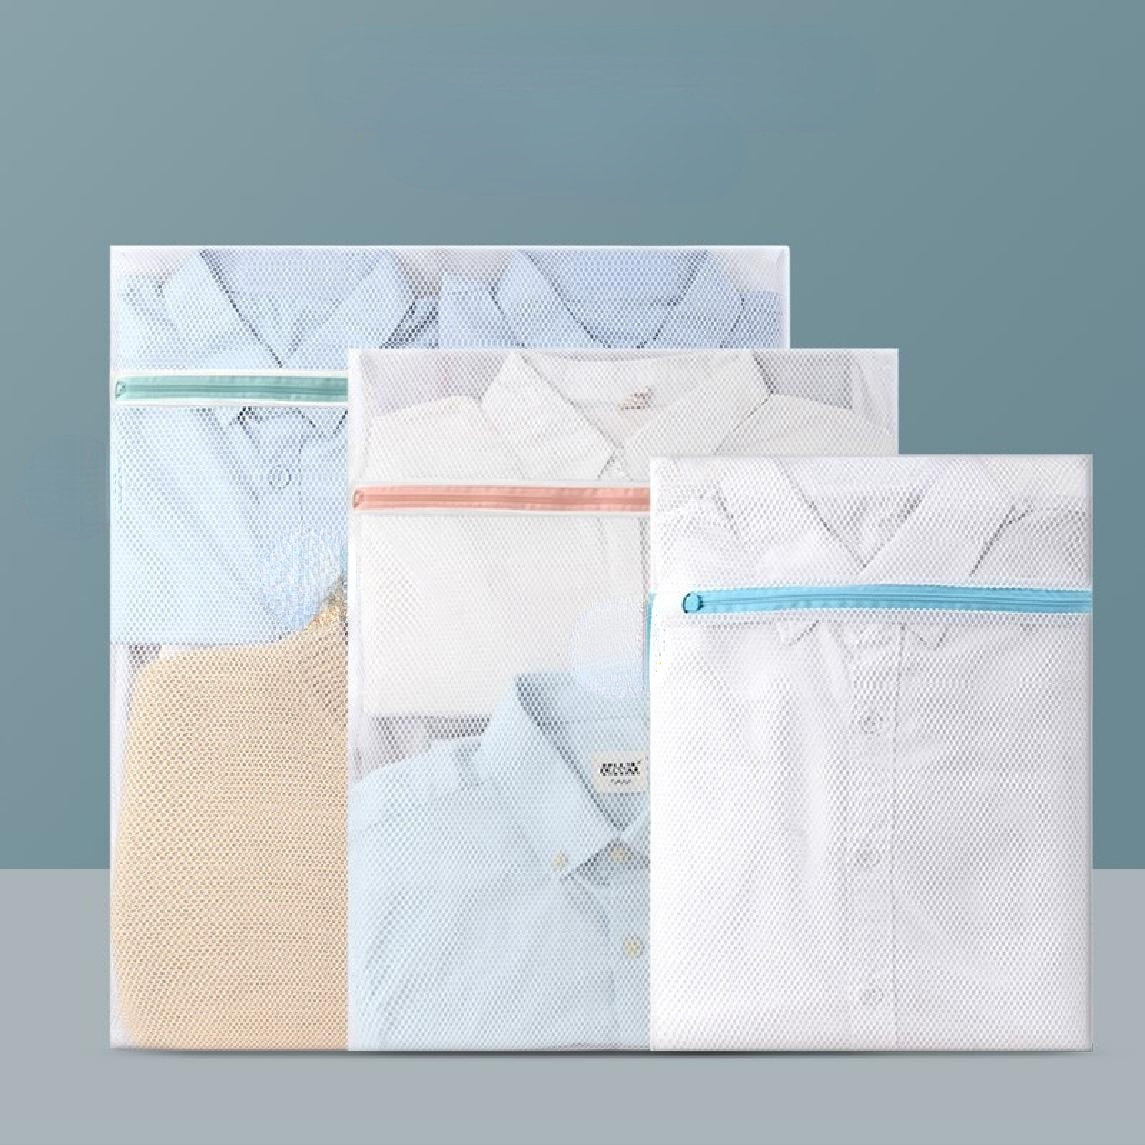 Rebrilliant Fabric Wash Bags / Lingerie Bags - 5 Piece Set